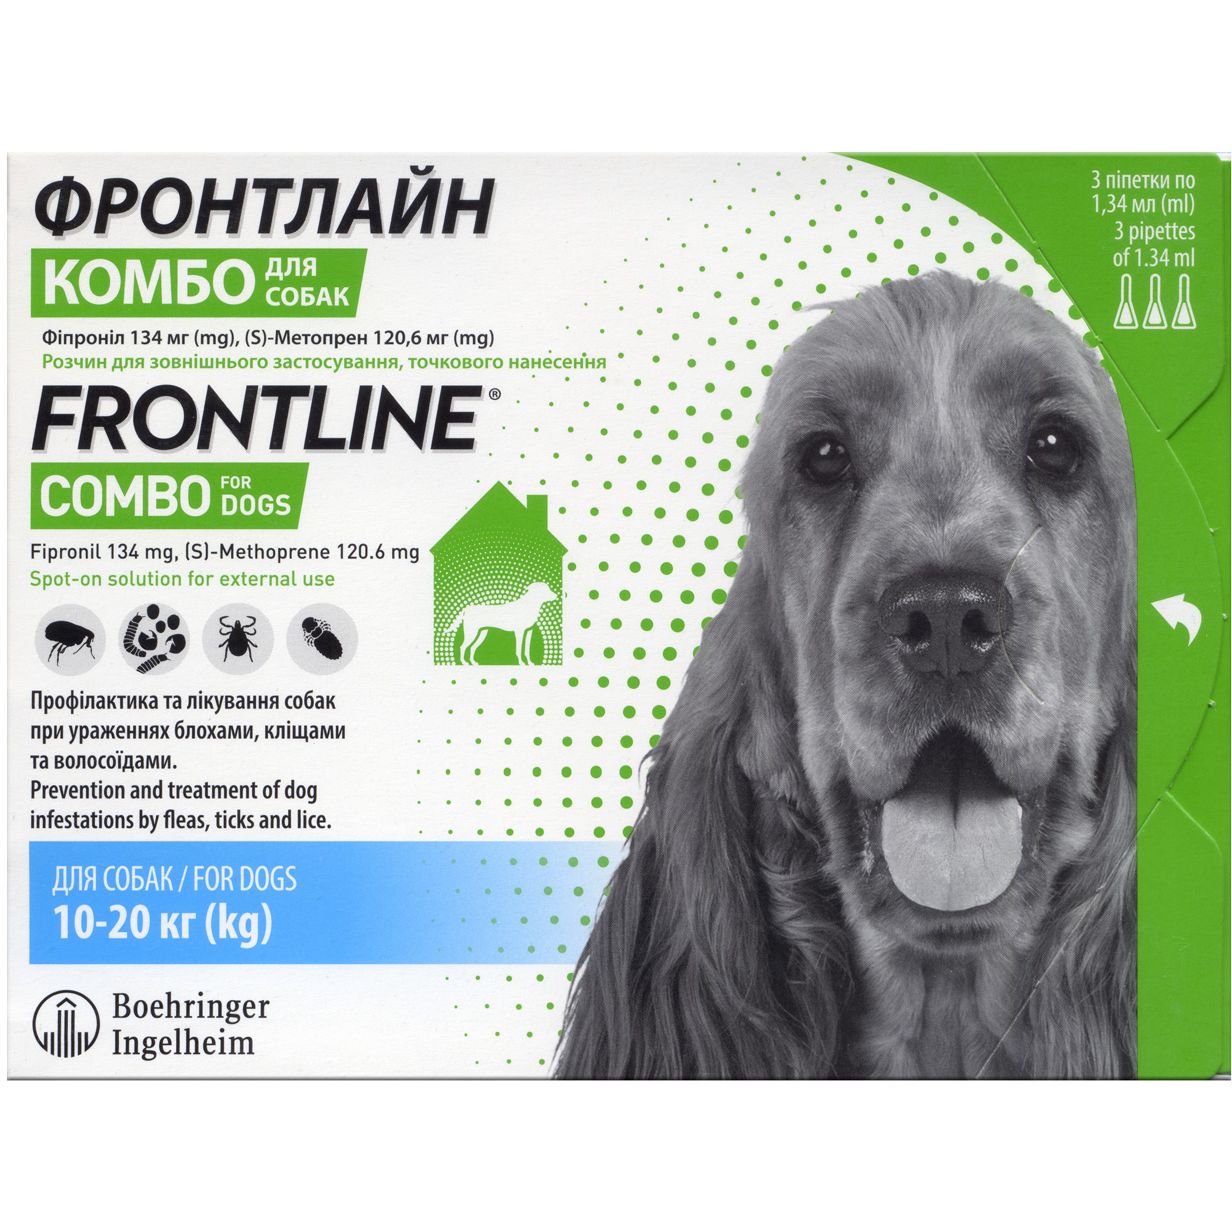 Капли Boehringer Ingelheim Frontline Combo от блох и клещей для собак 10-20 кг 4.02 мл (3 шт. х 1.34 мл) (159918) - фото 1